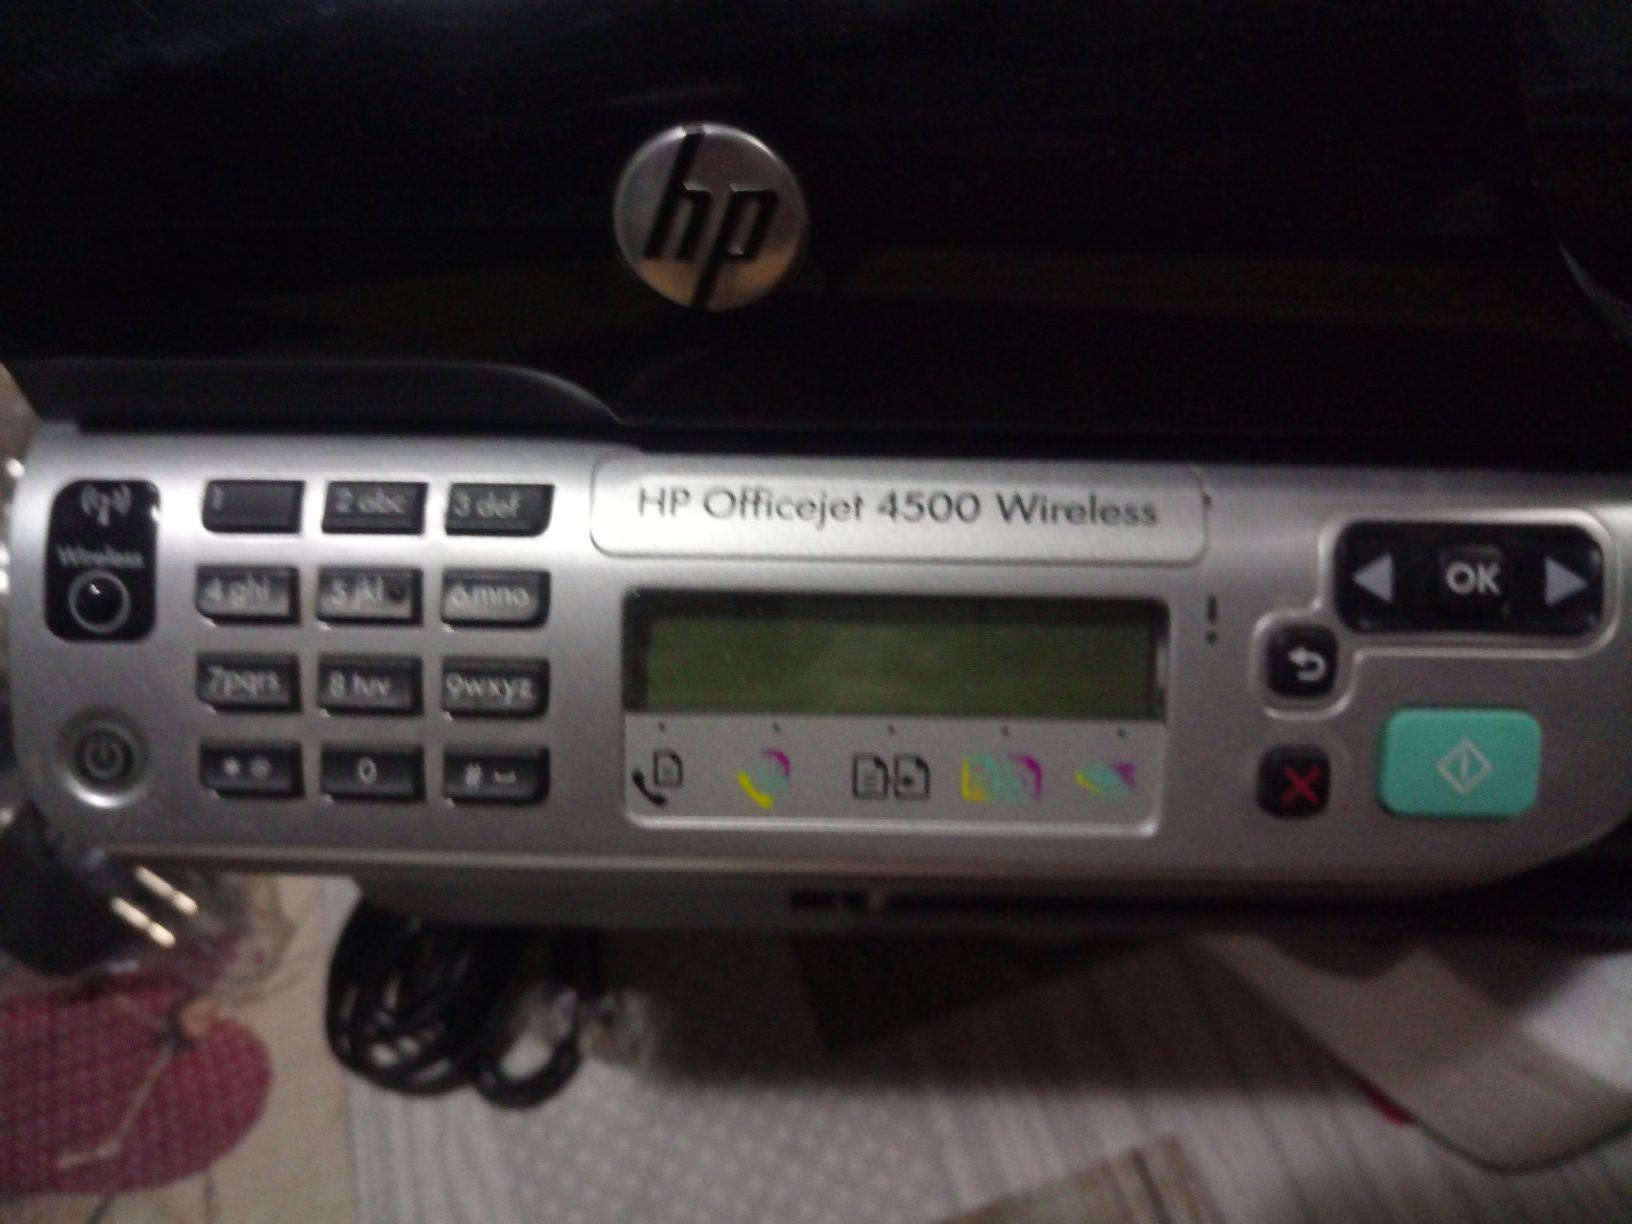 Impressora HP OfficeJet 4500 wireless